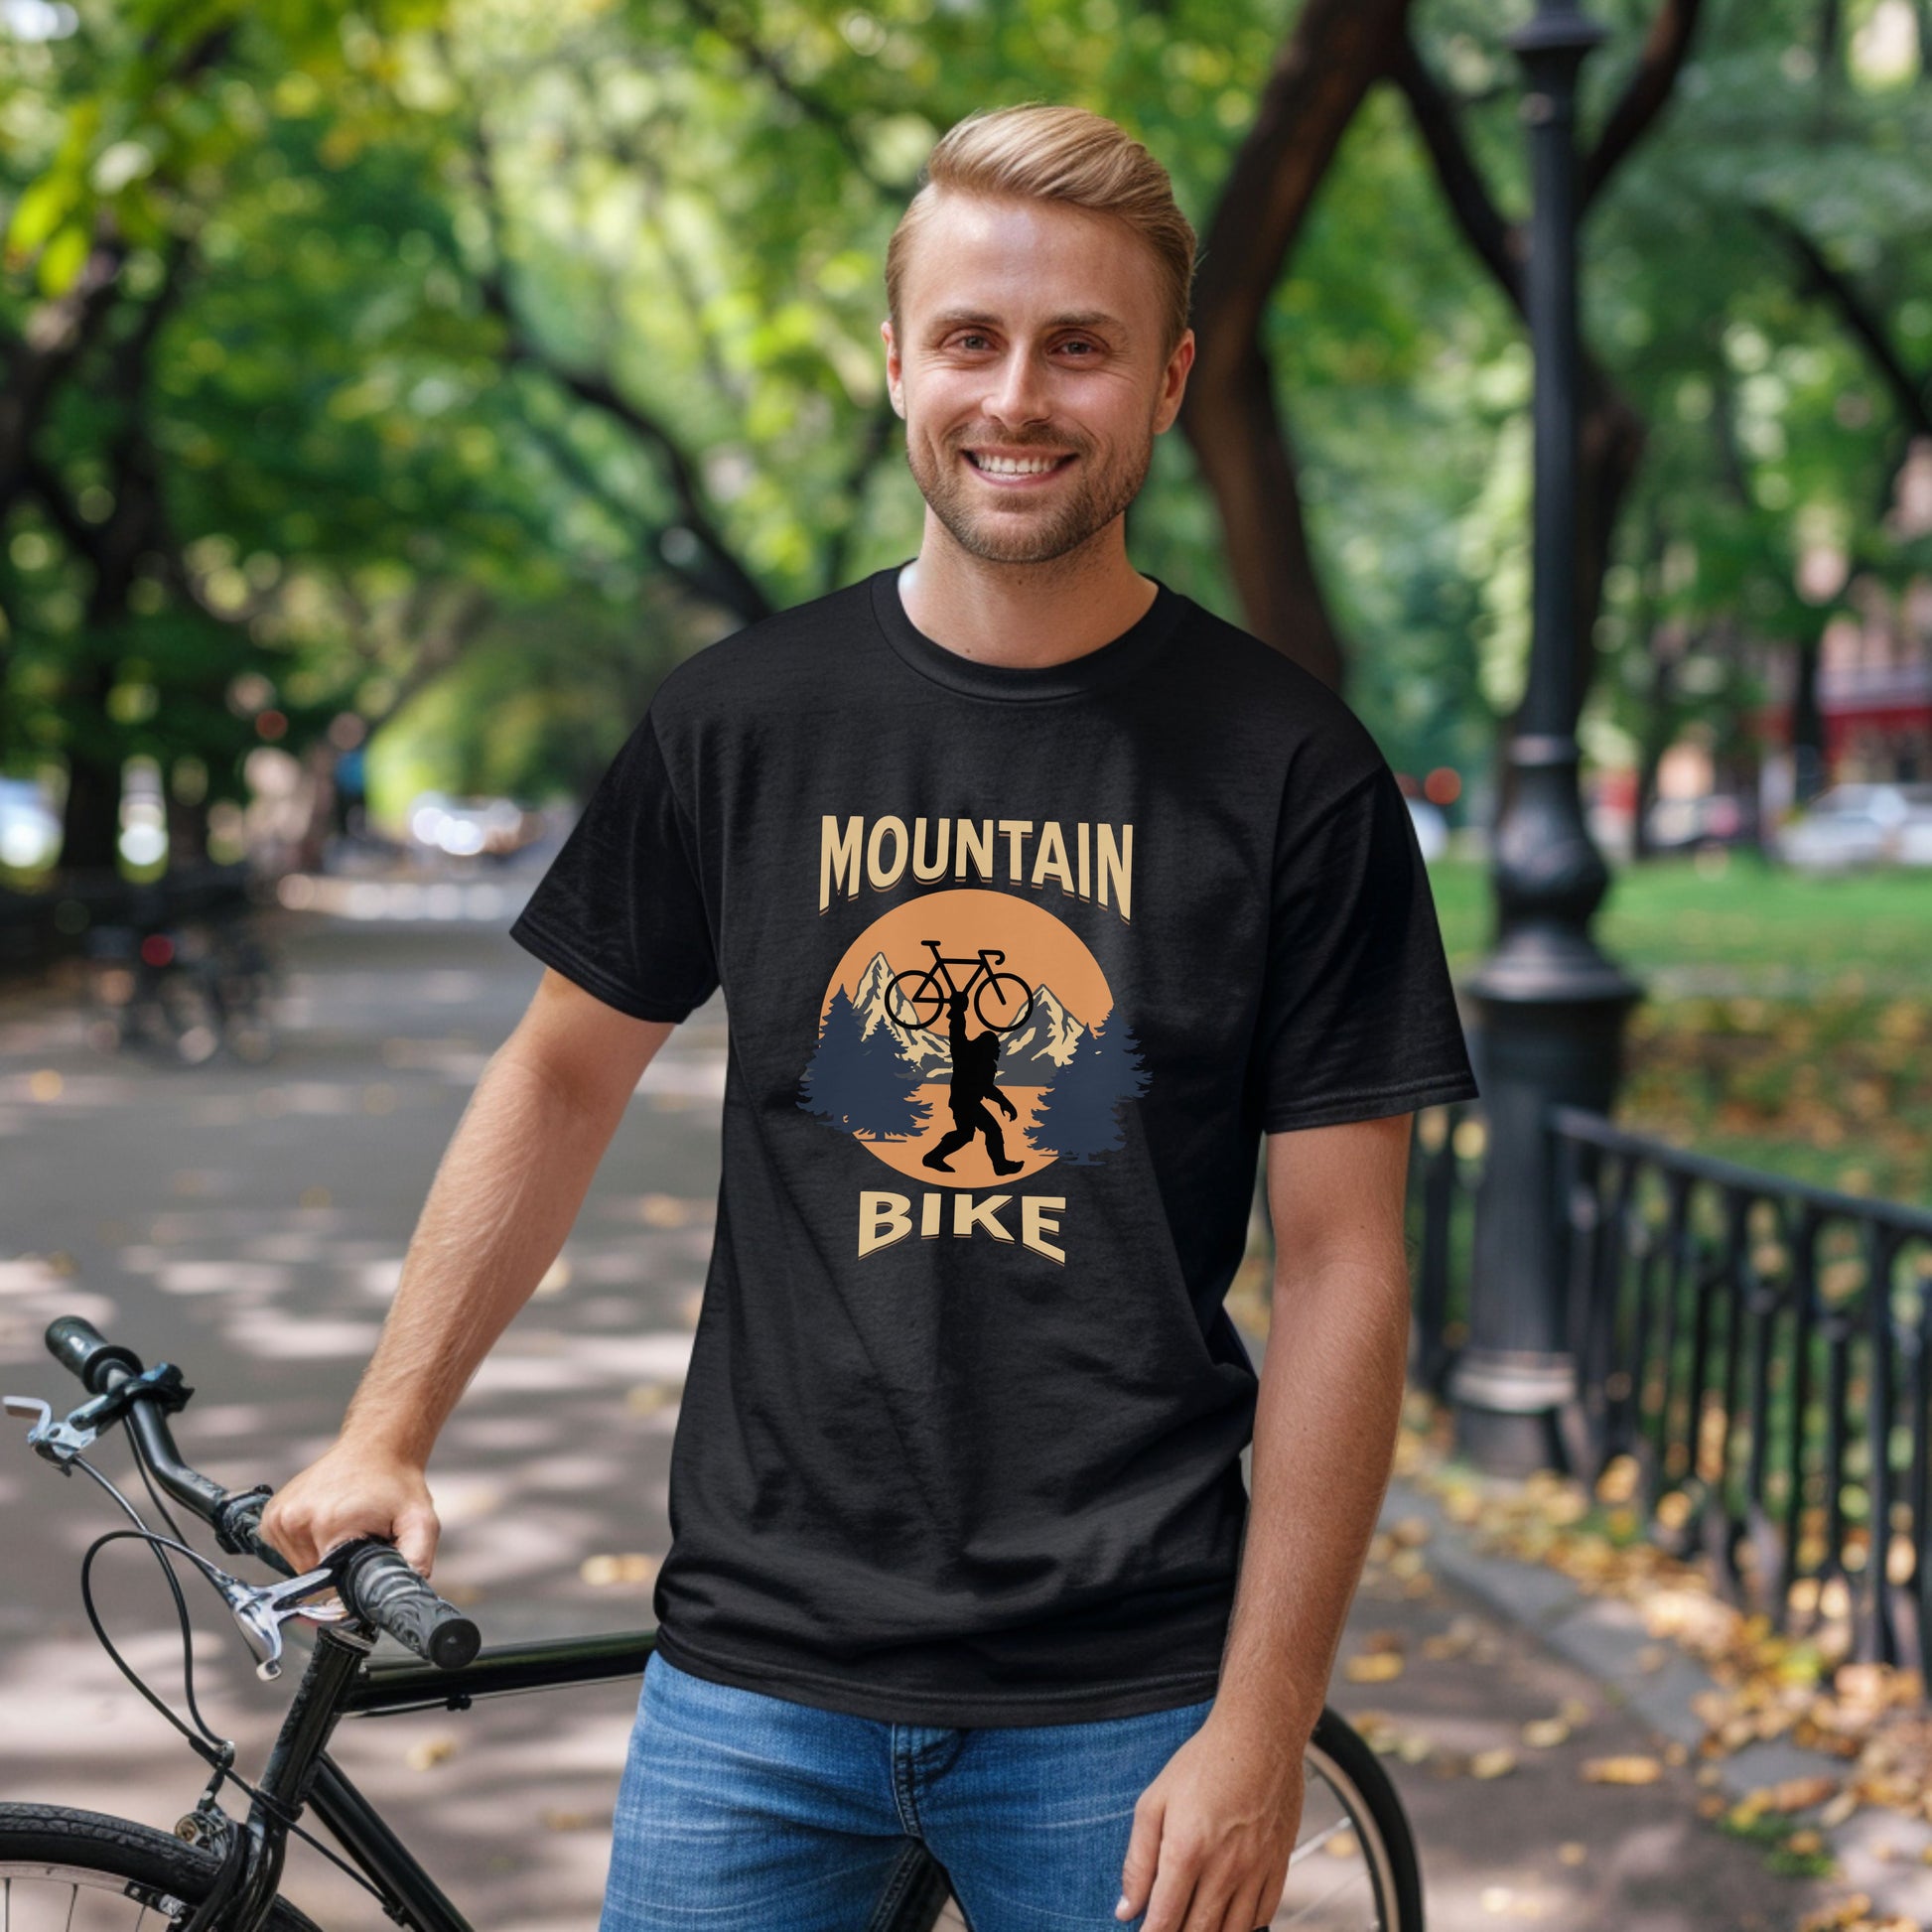 Bike Bliss Bigfoot Mountain Bike T-Shirt for Outdoor Cycling Enthusiasts for Men Model 3